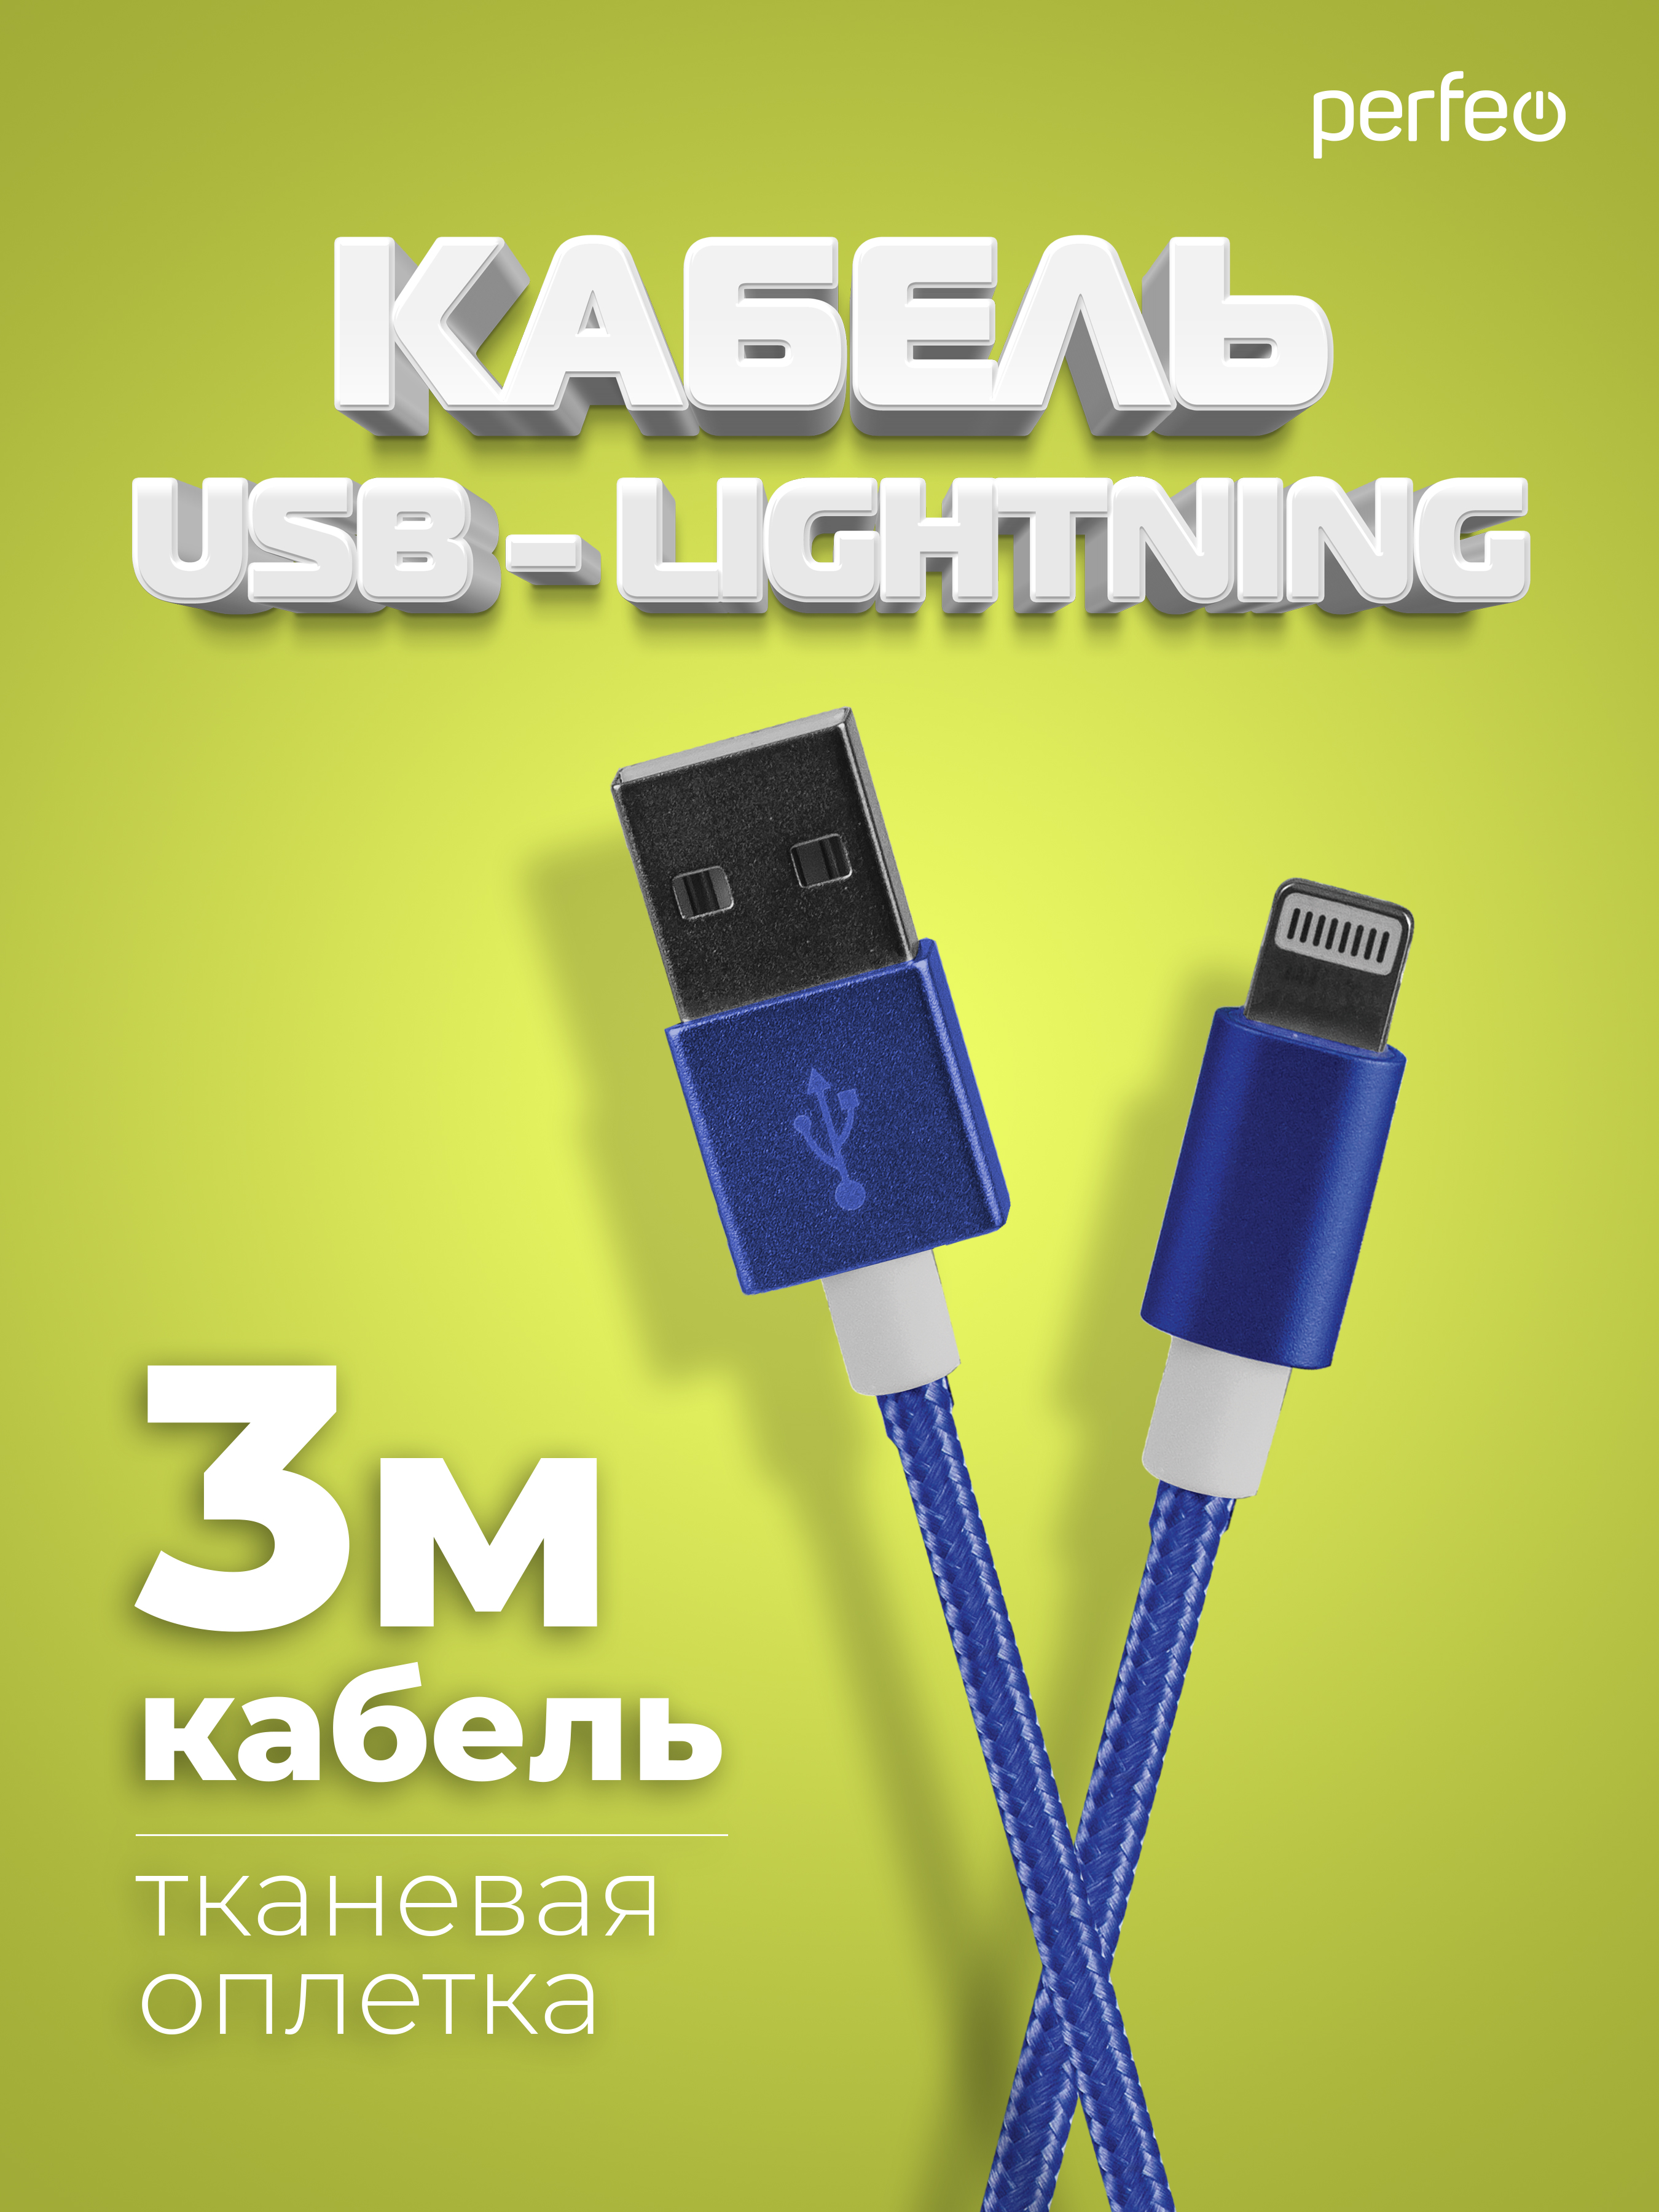 Кабель Perfeo для iPhone USB - 8 PIN Lightning синий длина 3 м. I4312 - фото 1